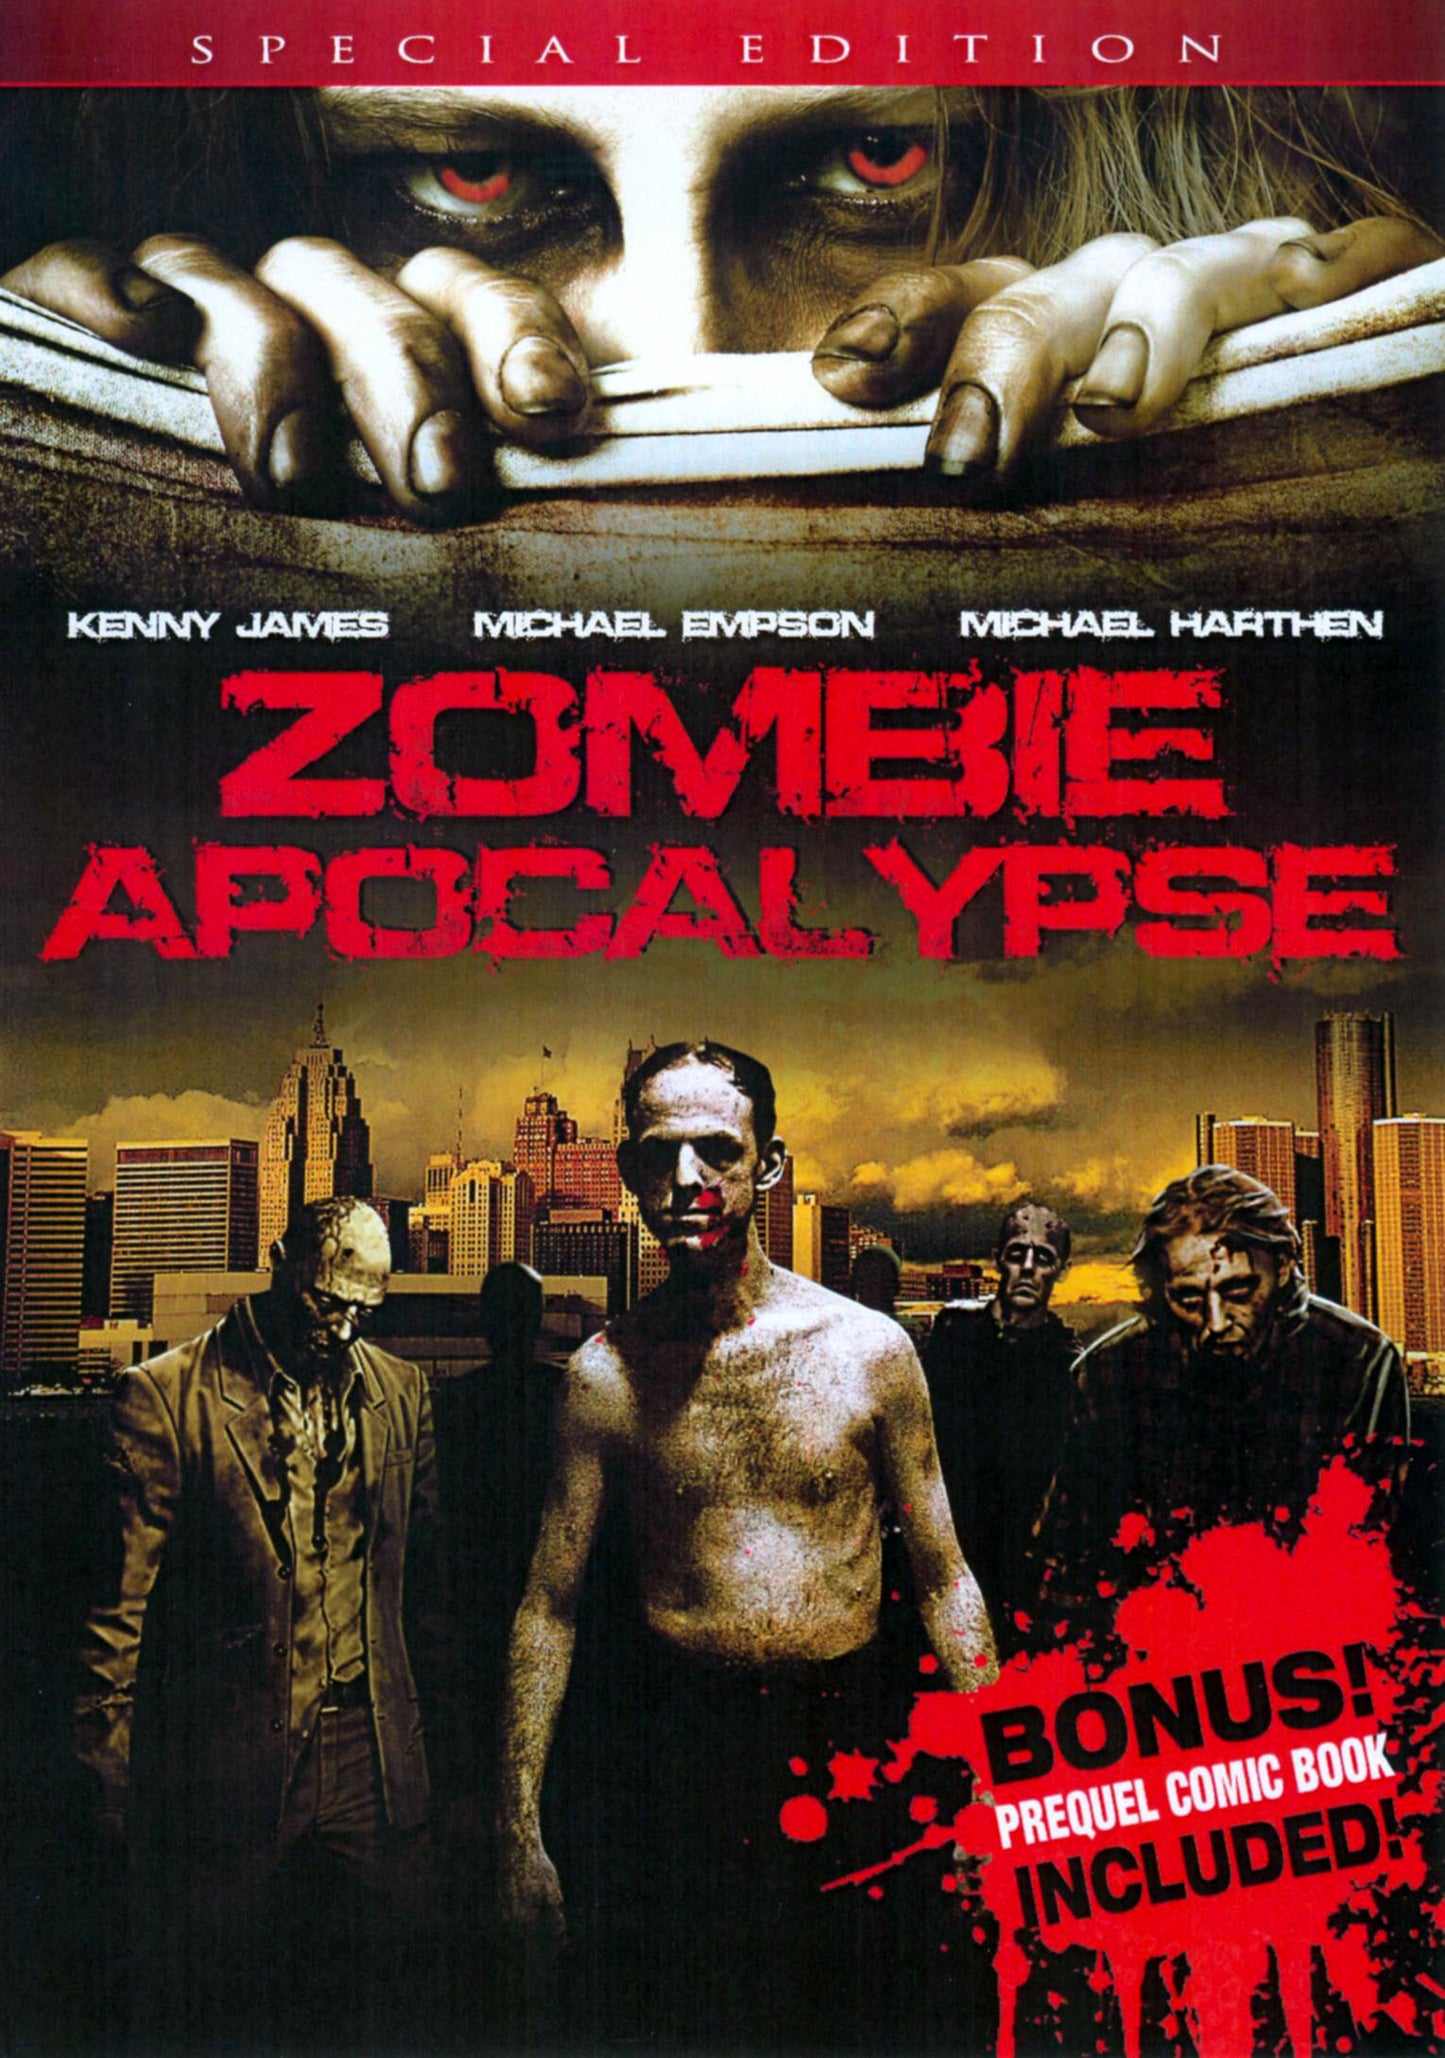 Zombie Apocalypse cover art